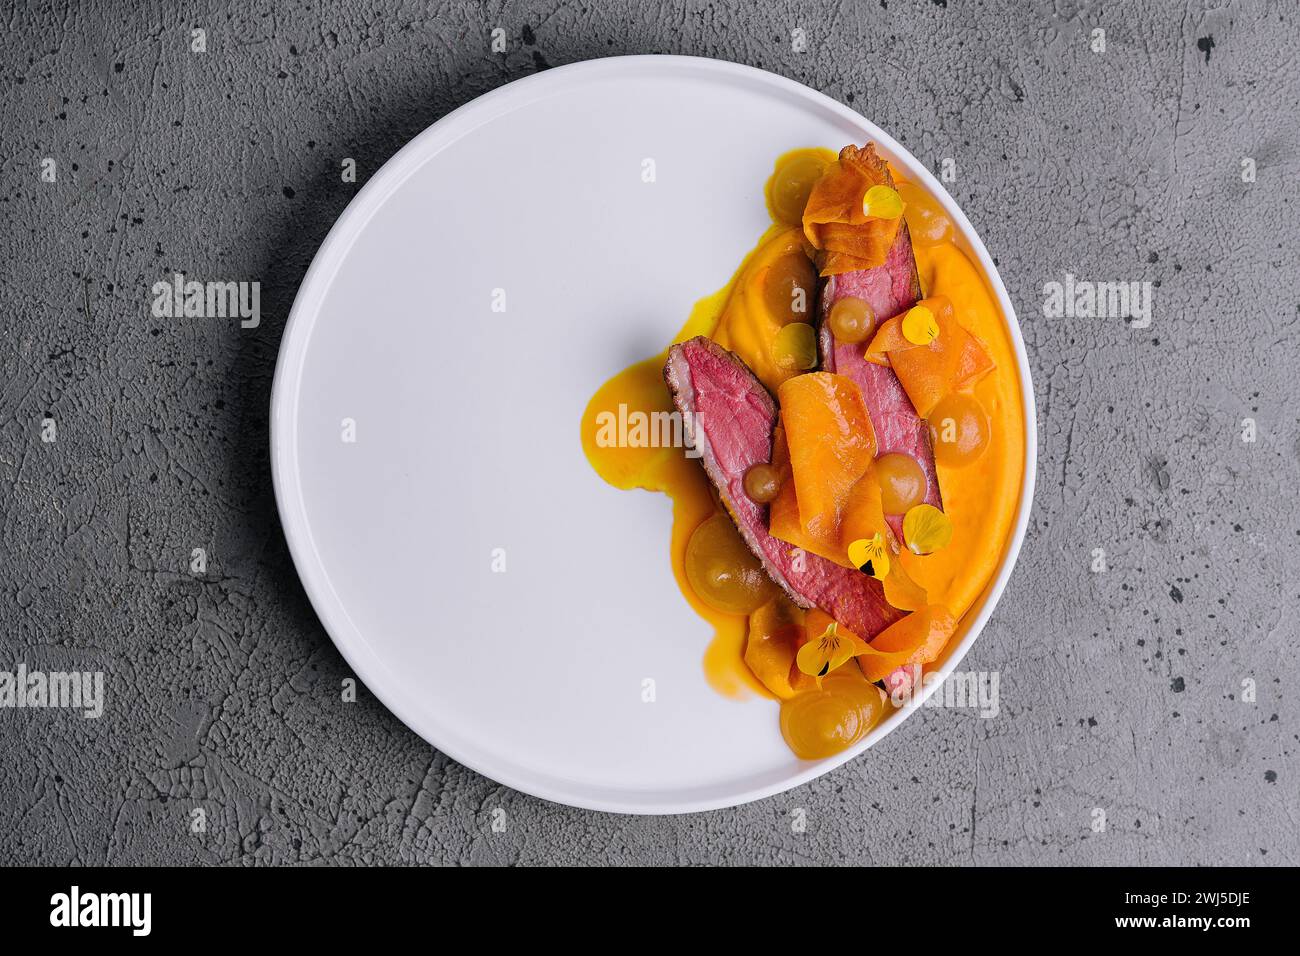 Exquisite serving juicy duck tenderloin with carrot puree Stock Photo